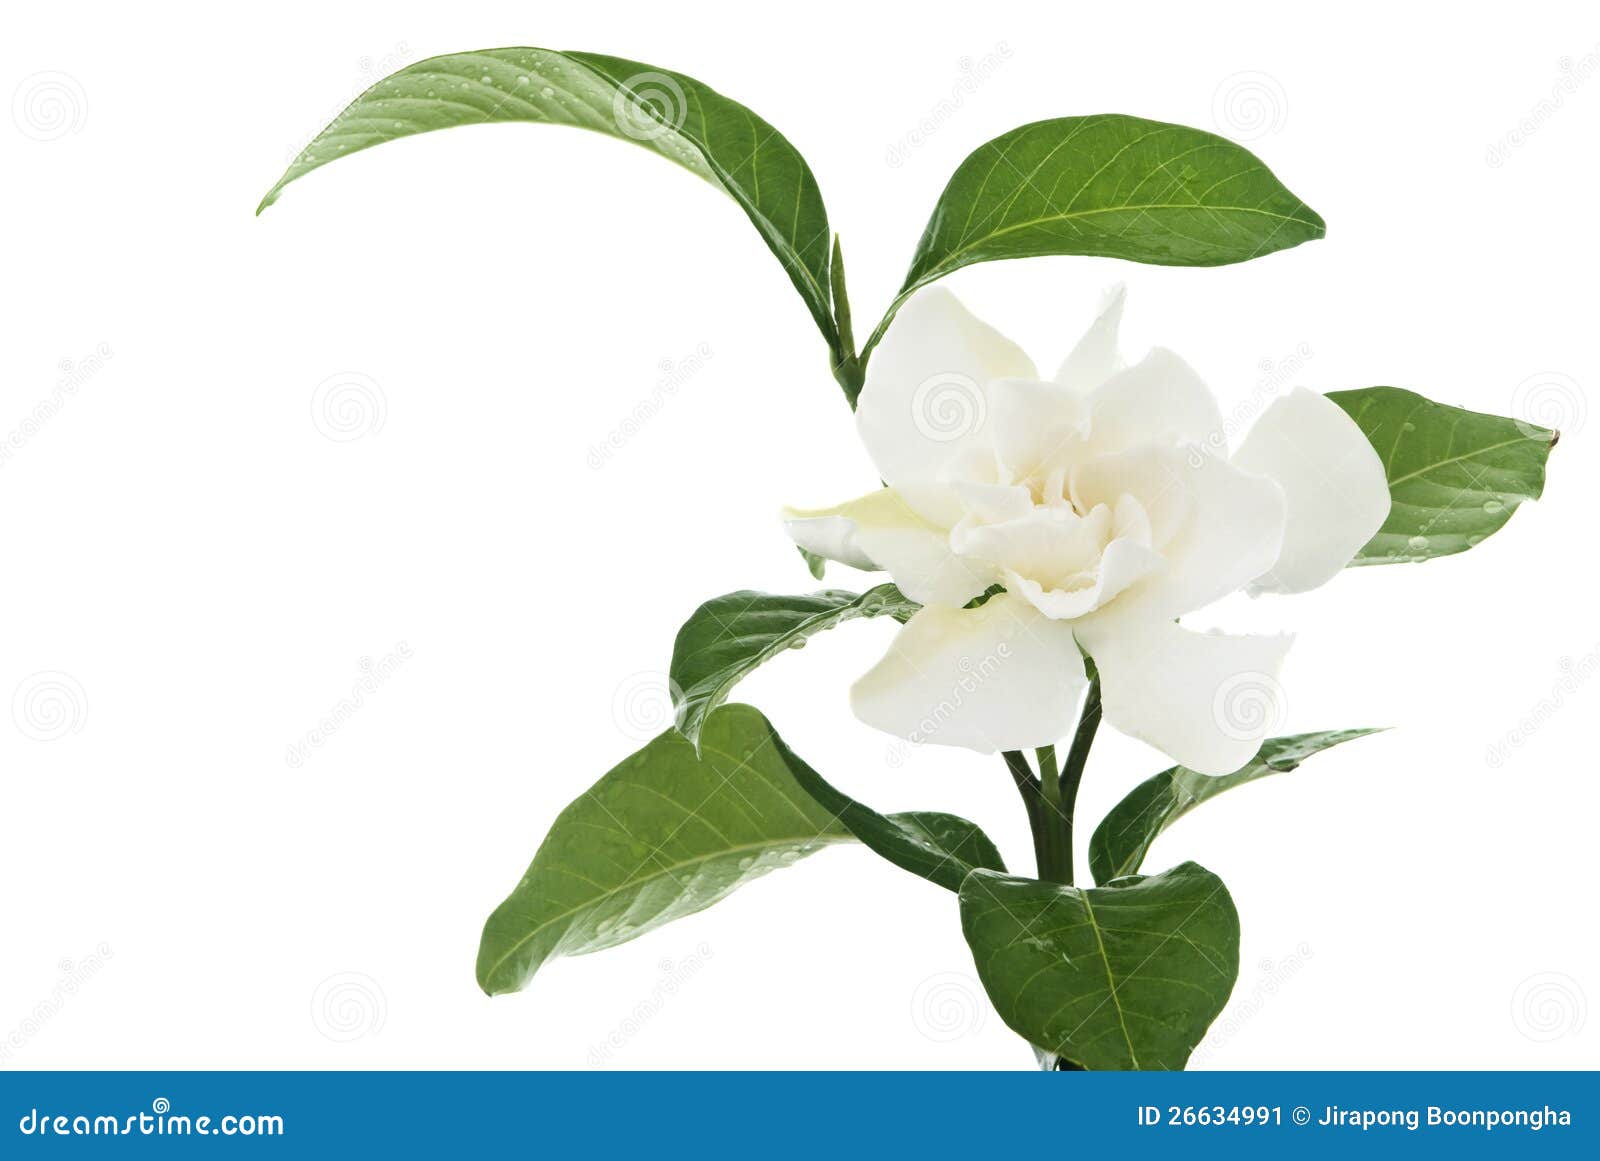 Flor Comum Do Jasmim Do Orcape Do Gardenia De Hite Imagem de Stock - Imagem  de capa, beleza: 26634991